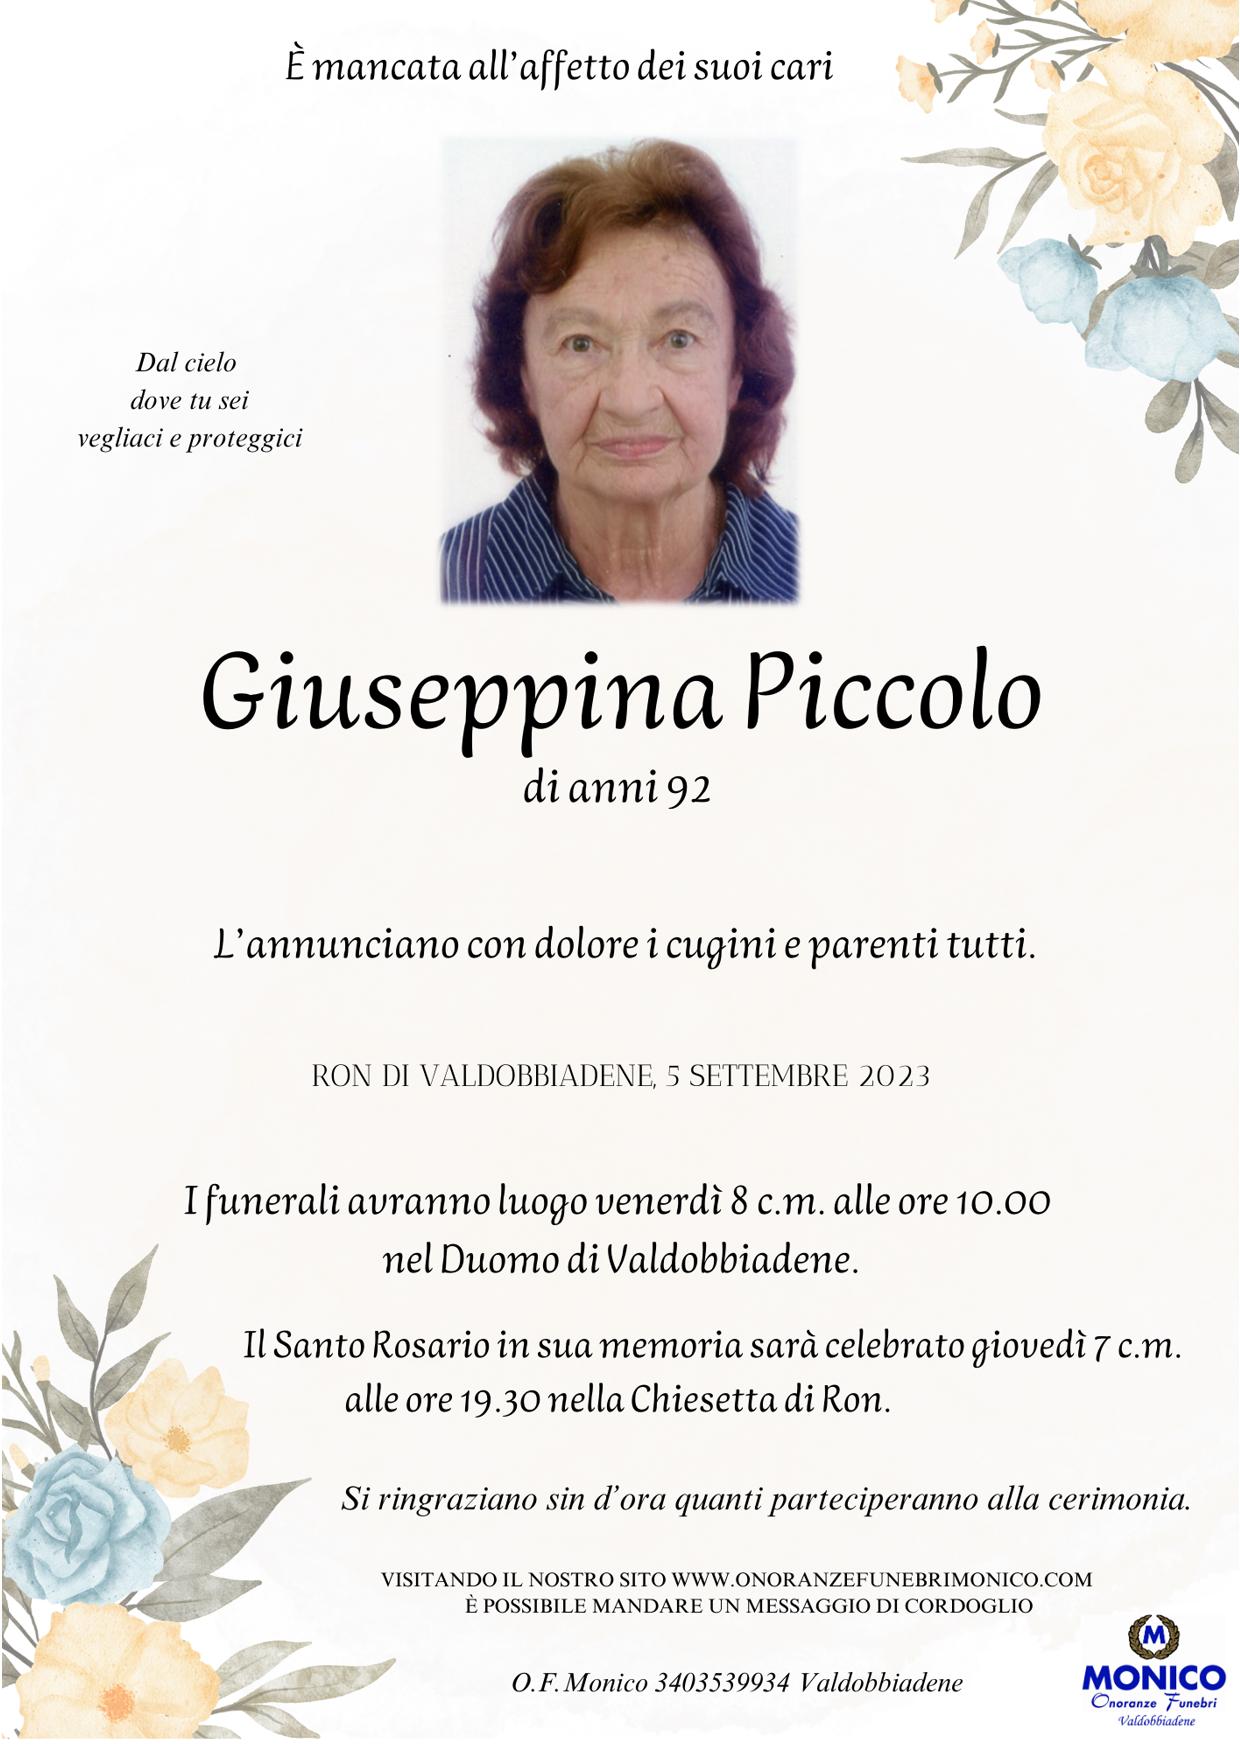 Giuseppina Piccolo